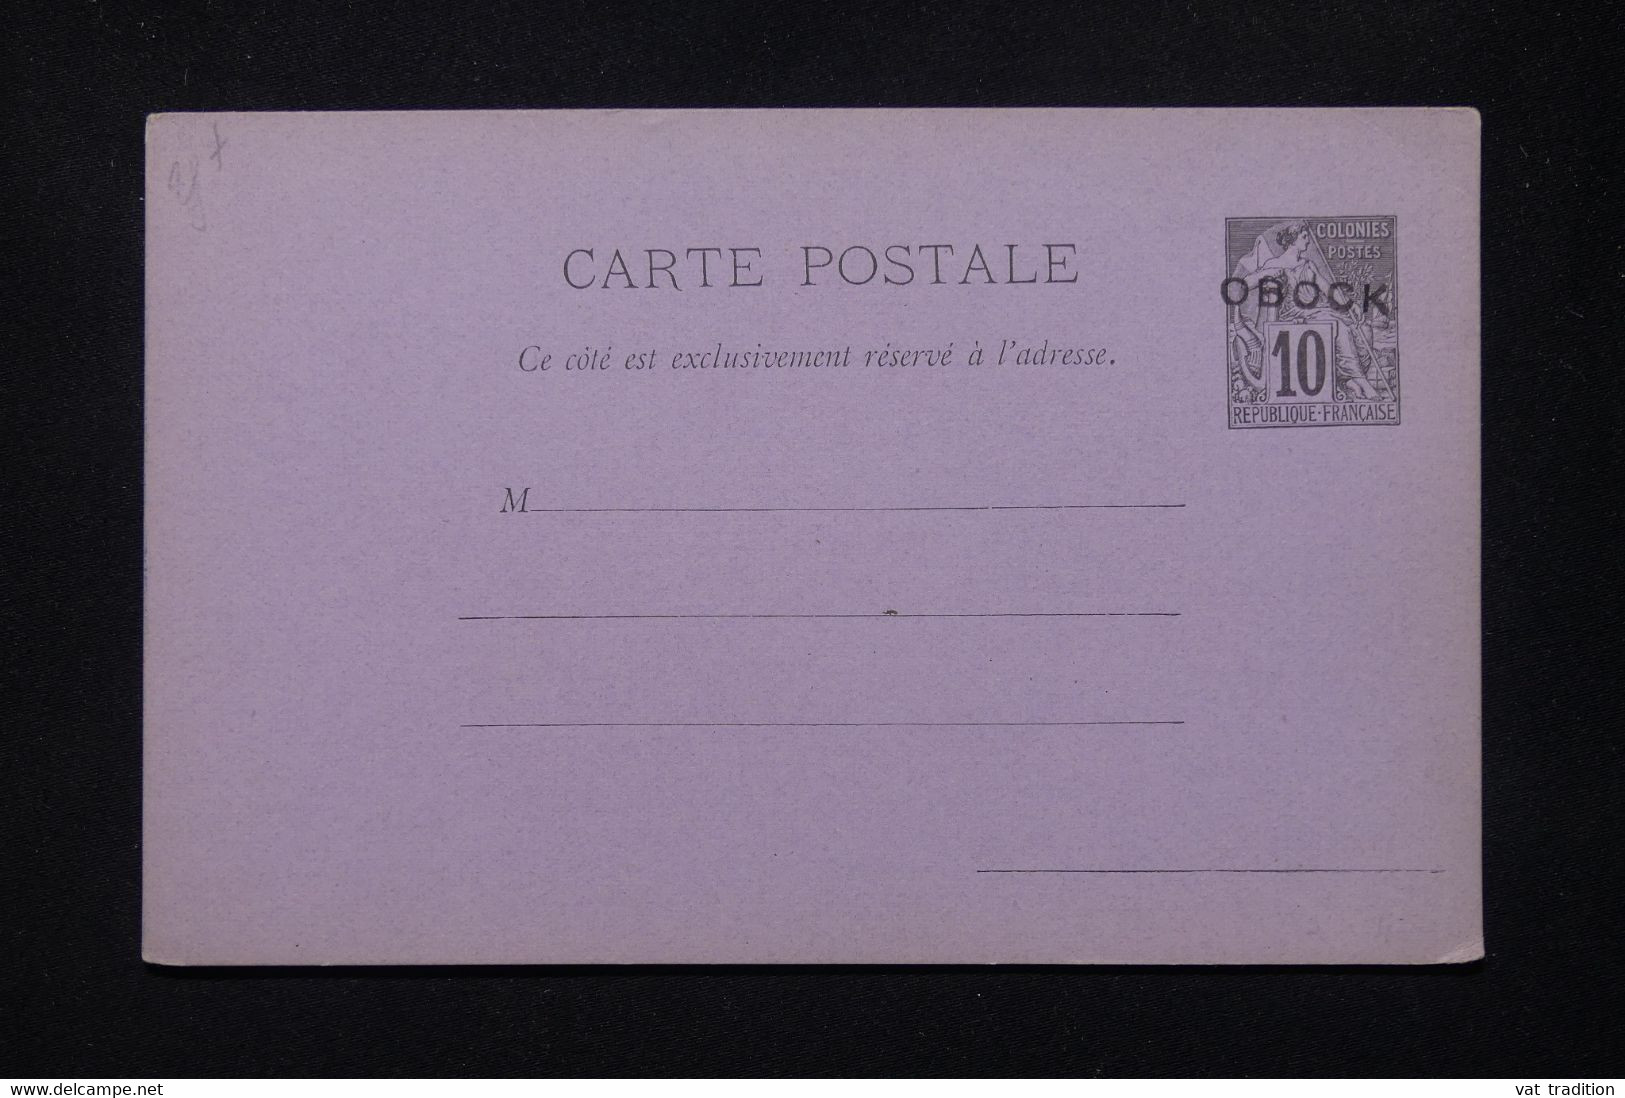 OBOCK - Entier Postal Type Alphée Dubois Surchargé, Non Circulé - L 79658 - Lettres & Documents